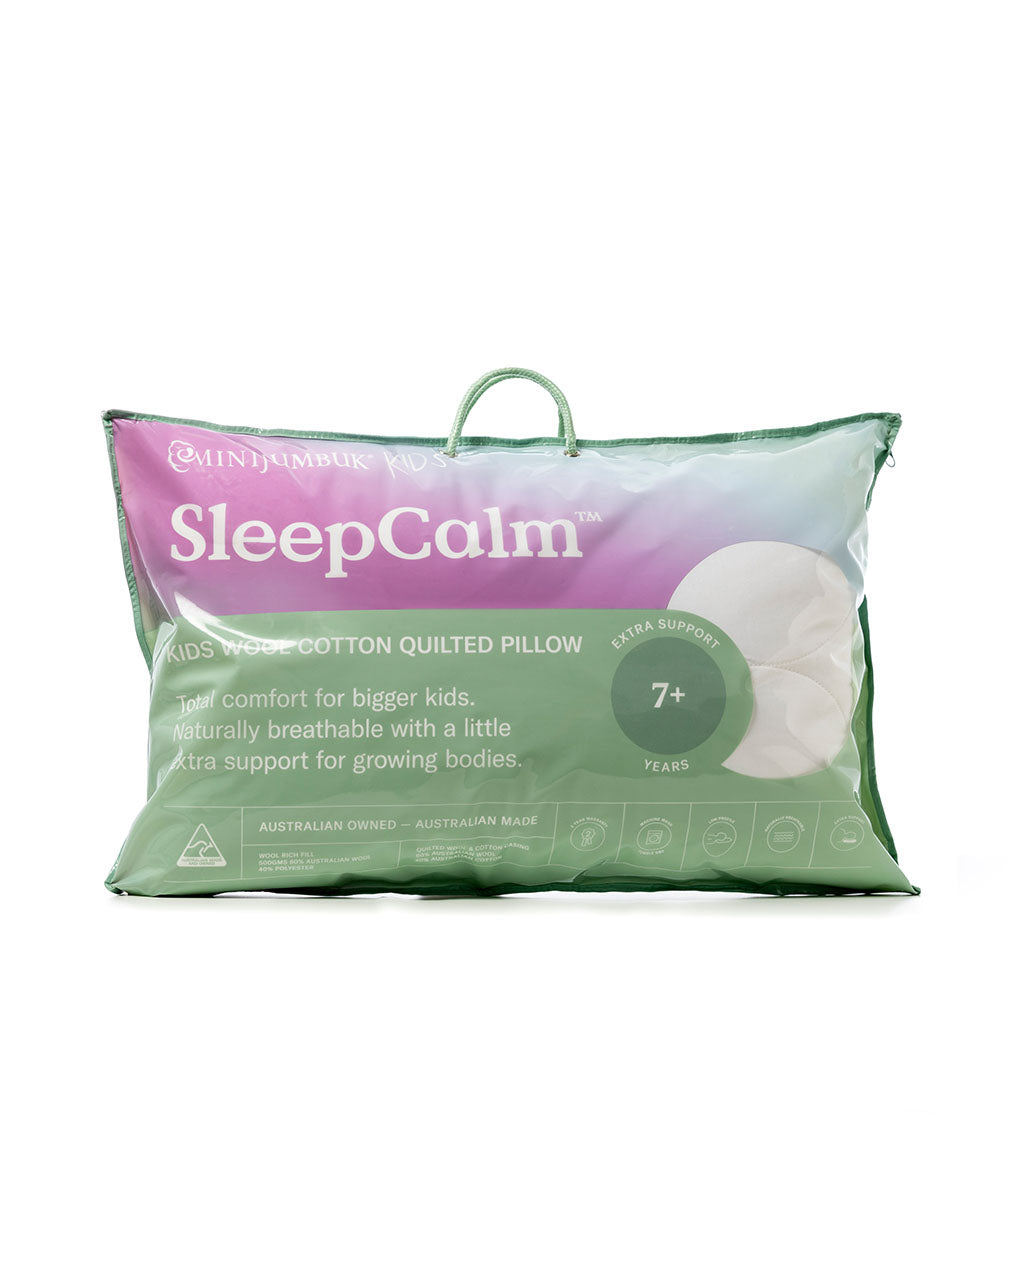 MiniJumbuk's SleepCalm™ Kids Wool Cotton Quilted Pillow, Australian Made  Kids Pillows